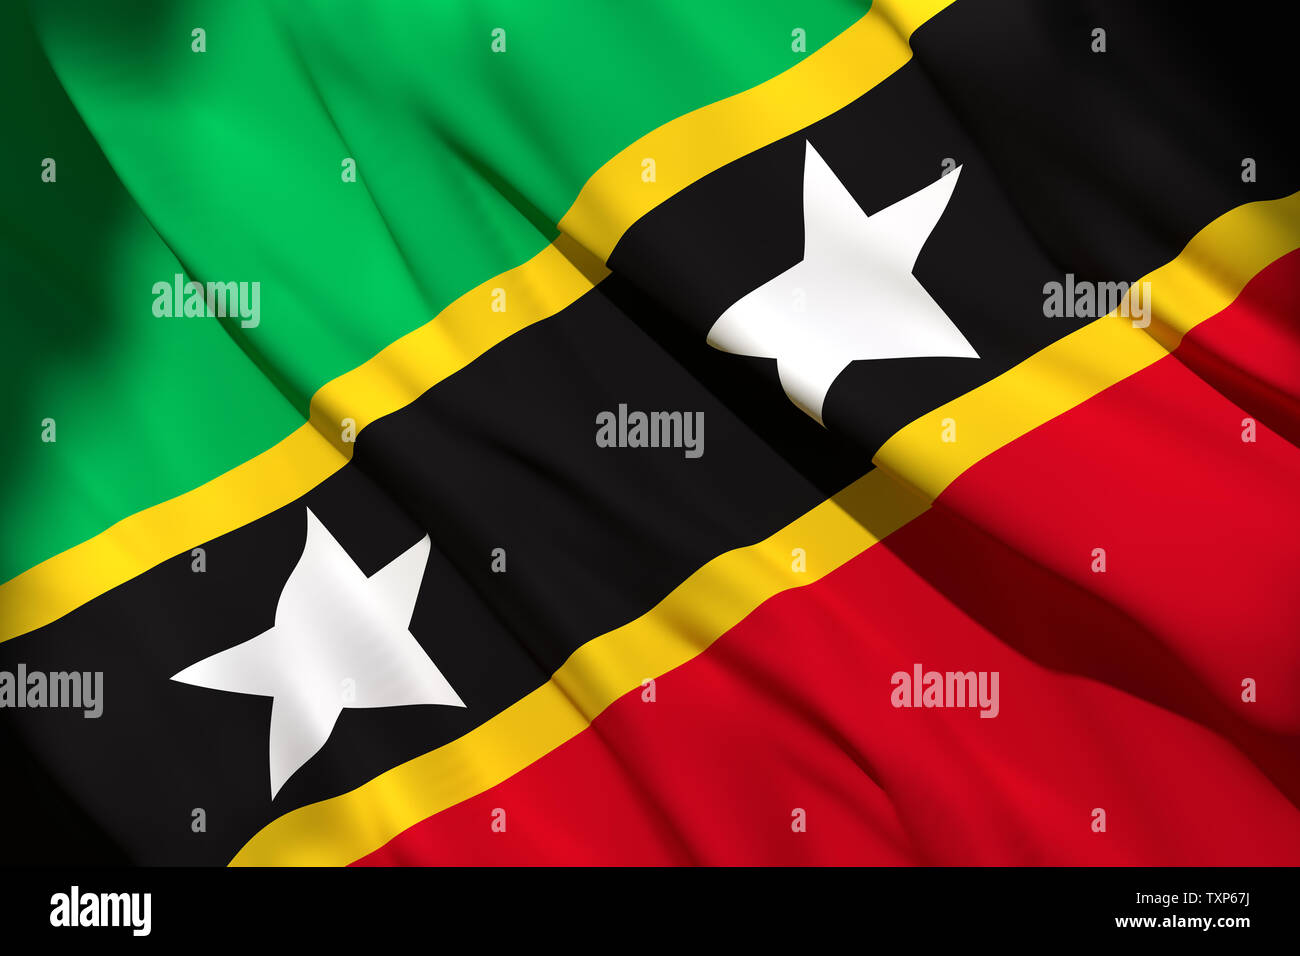 3D-Rendering für eine Saint Christopher und Nevis Flagge schwenken Stockfoto